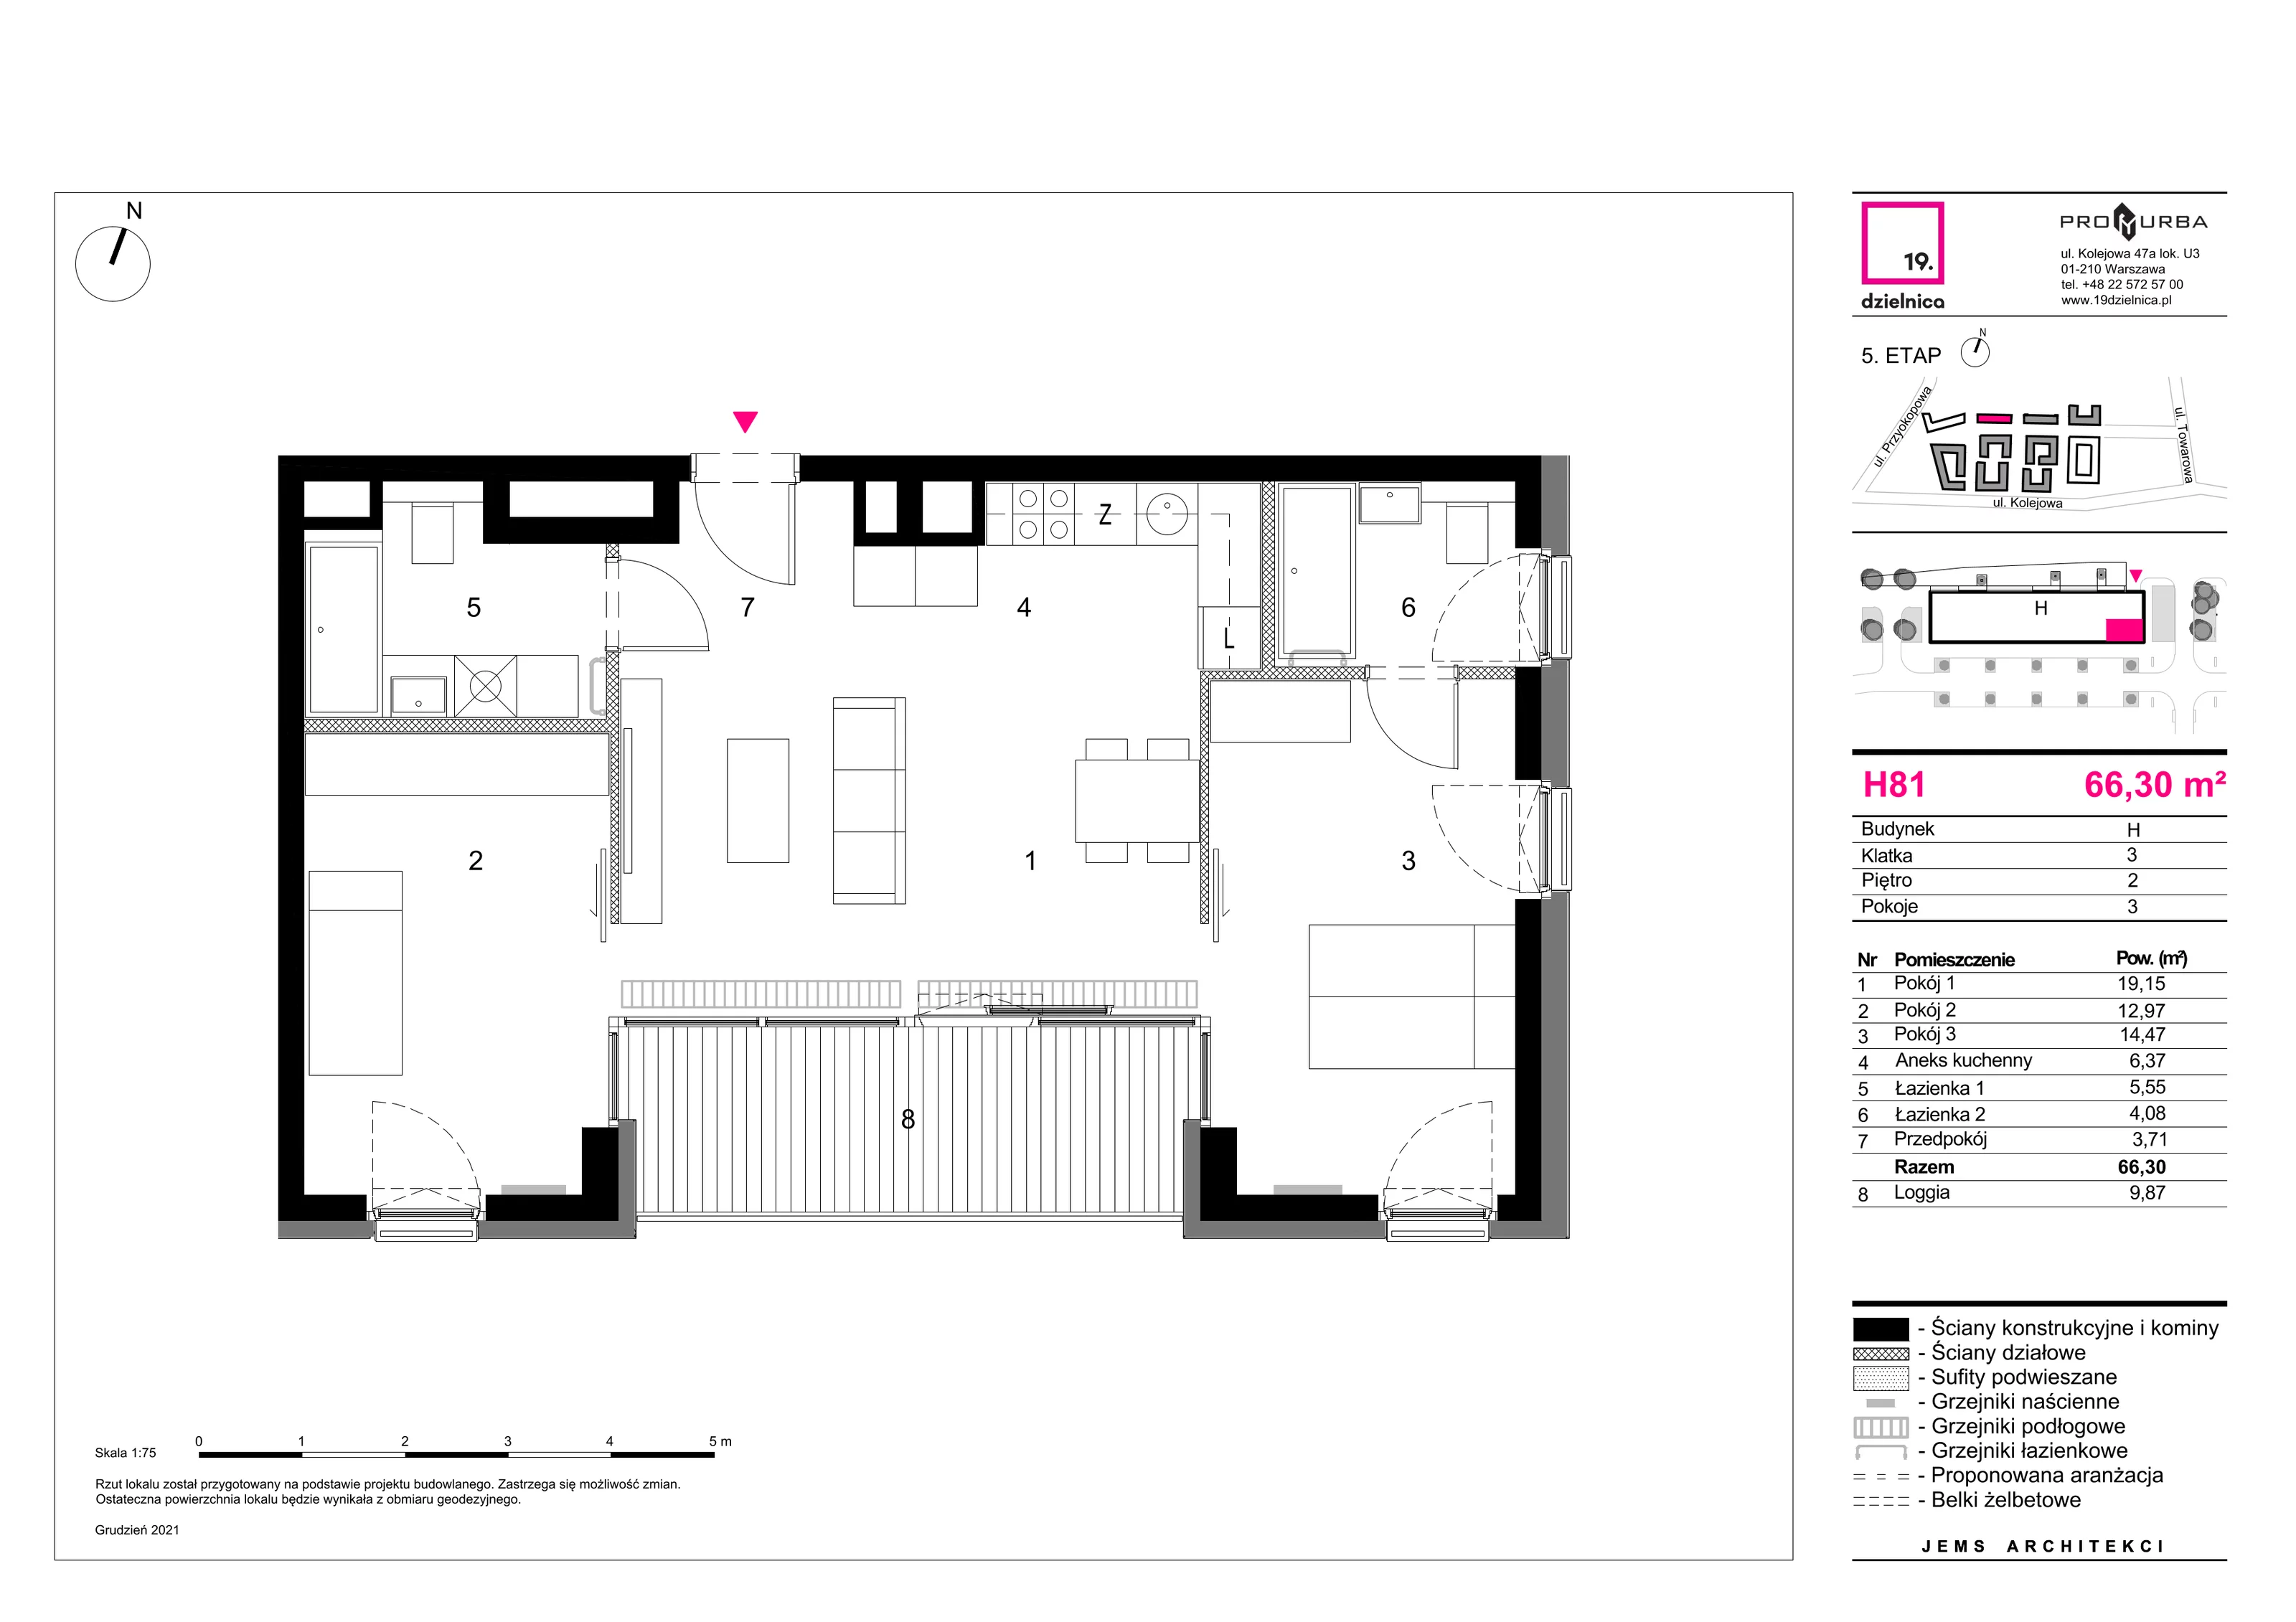 Mieszkanie 66,30 m², piętro 2, oferta nr H81, 19. Dzielnica V etap, Warszawa, Wola, Czyste, ul. Kolejowa 49